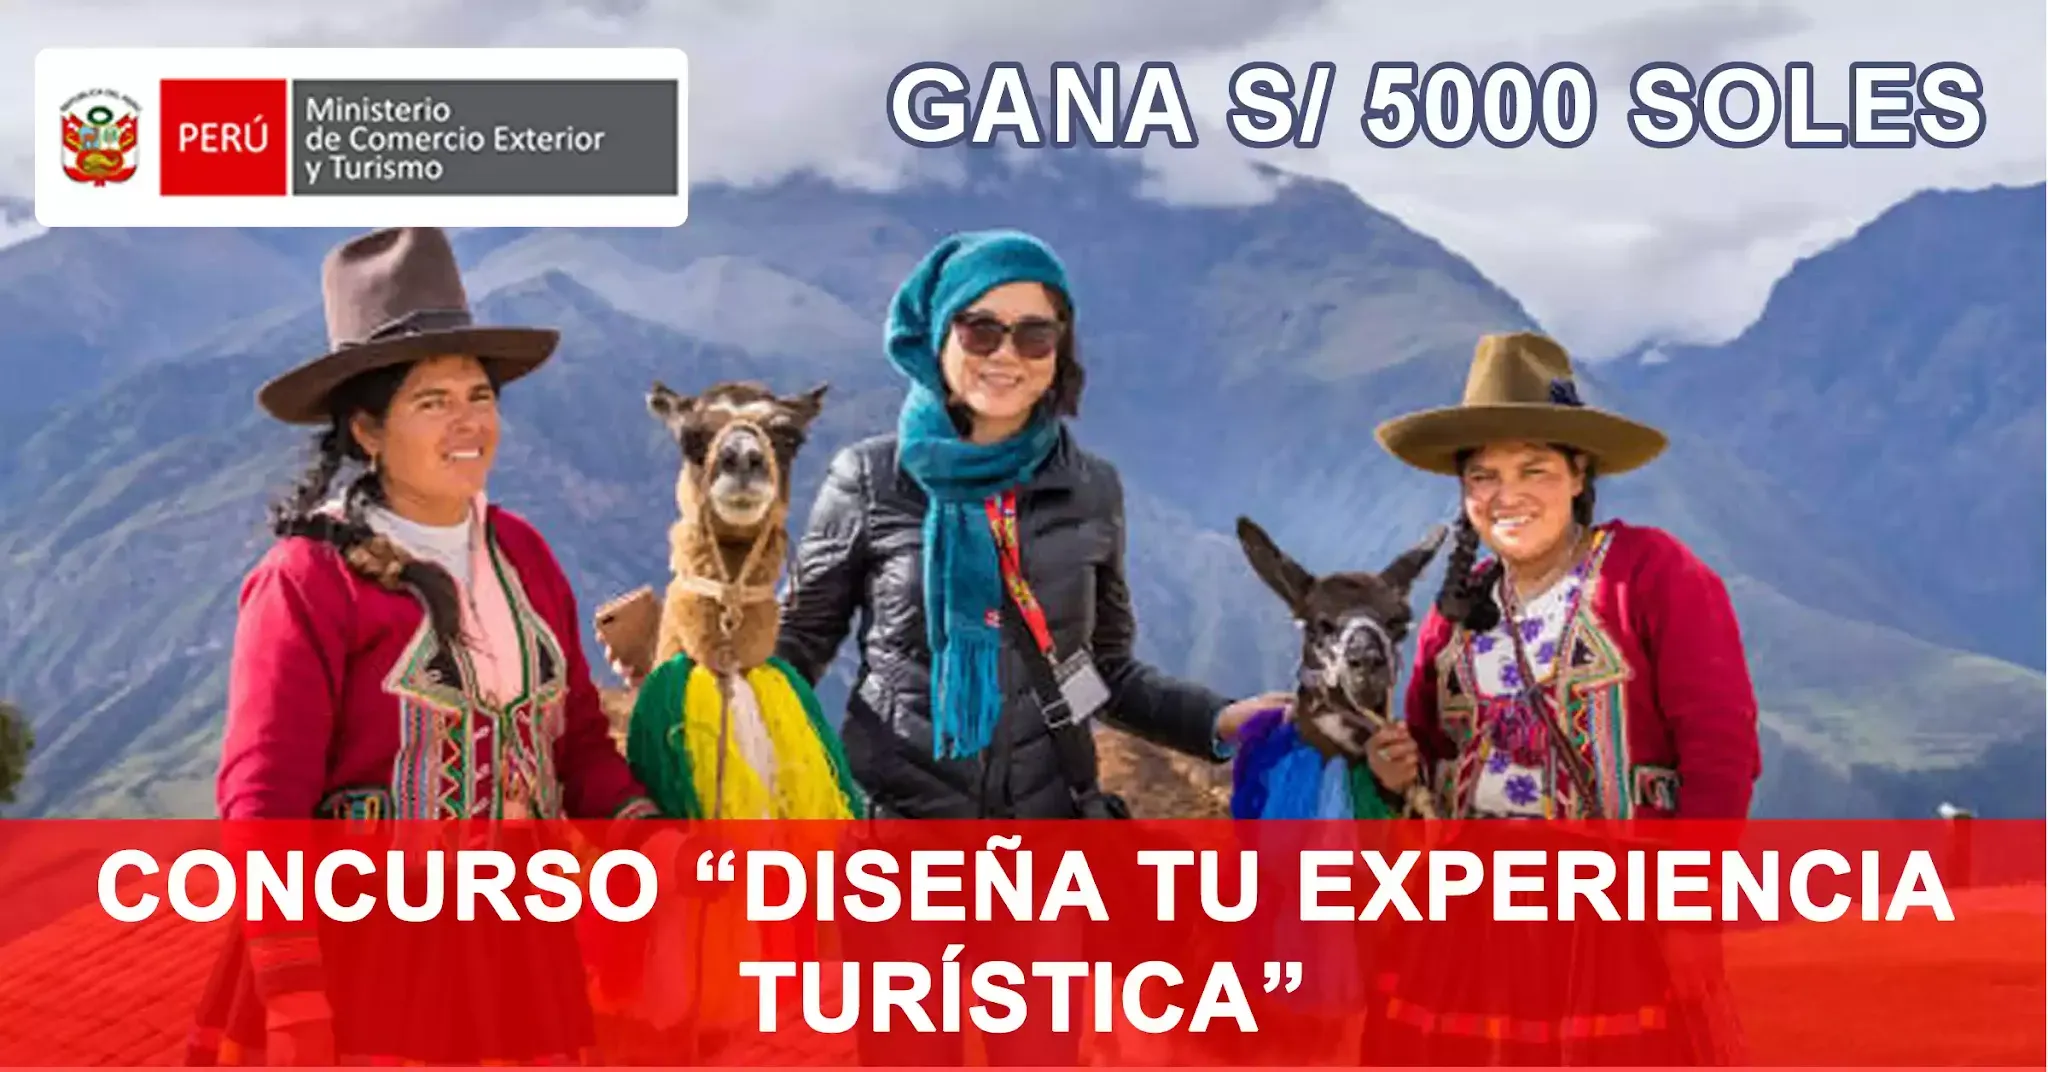 MINCETUR - Gana S/. 5000 Soles - Concurso Diseña tu Experiencia Turística (Serán 6000 beneficiarios)